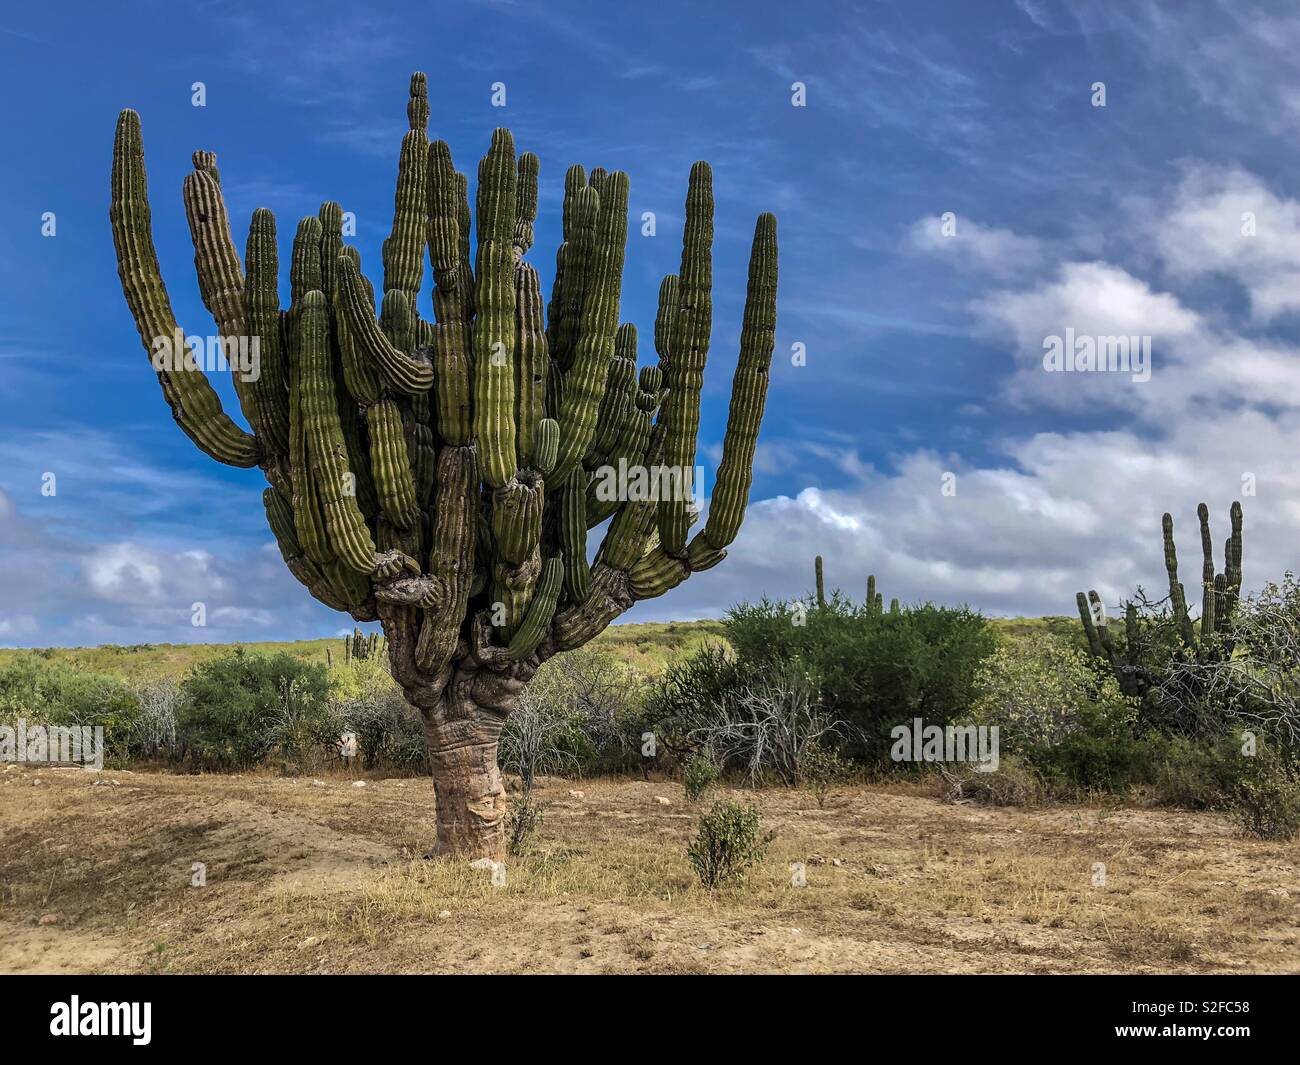 Cardon cacti (Pachycereus pringlei) cactus, also known as Mexican giant cardon or elephant cactus, Baja California, Mexico, Latin America Stock Photo